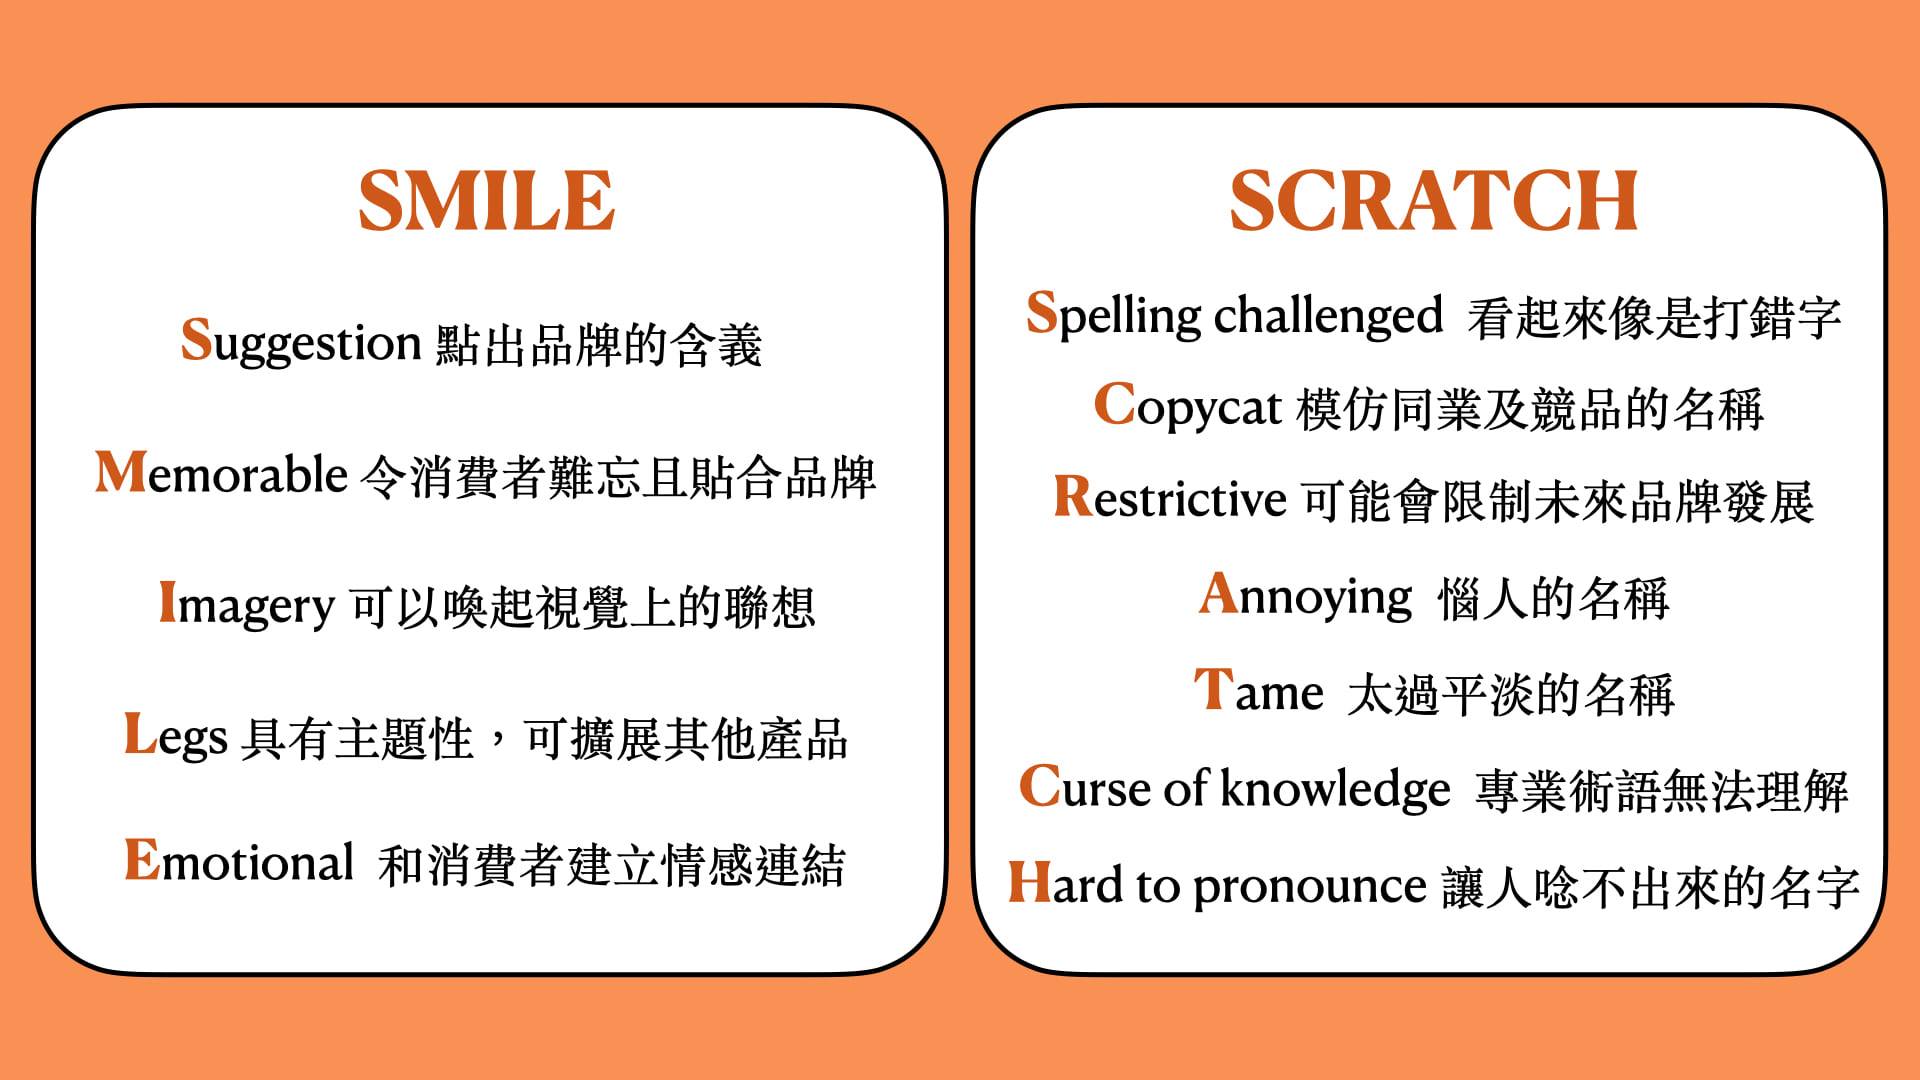 品牌命名專家亞歷山德拉・沃特金斯發明的「SMILE」及「SCRATCH」原則